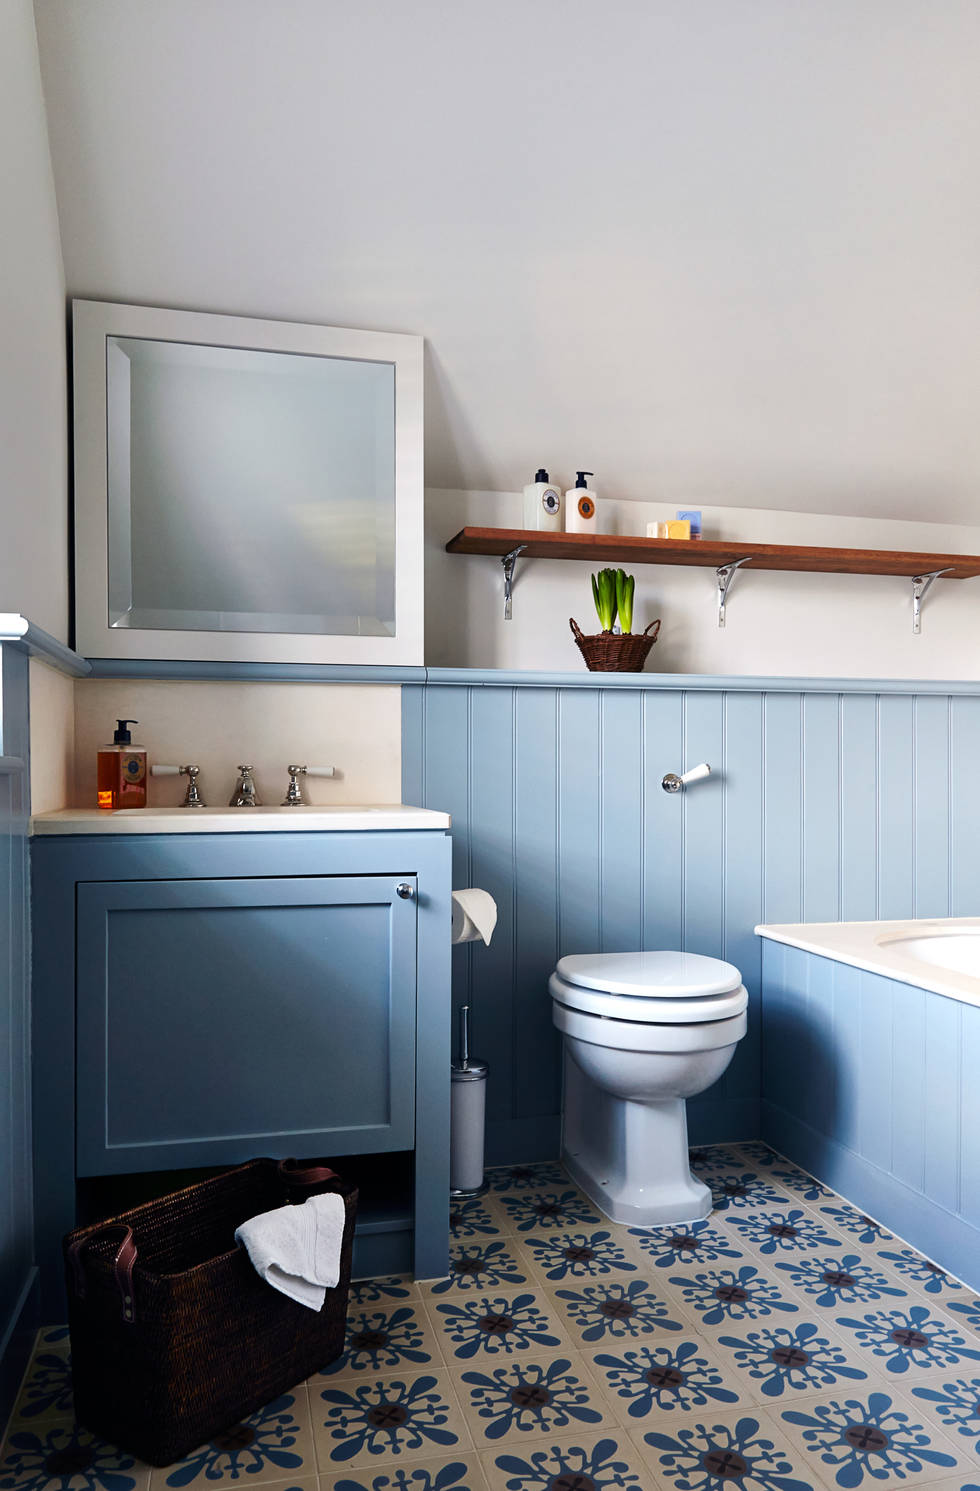 11 идей для большего объема пространства в небольших ванных комнатах- фотографии
				